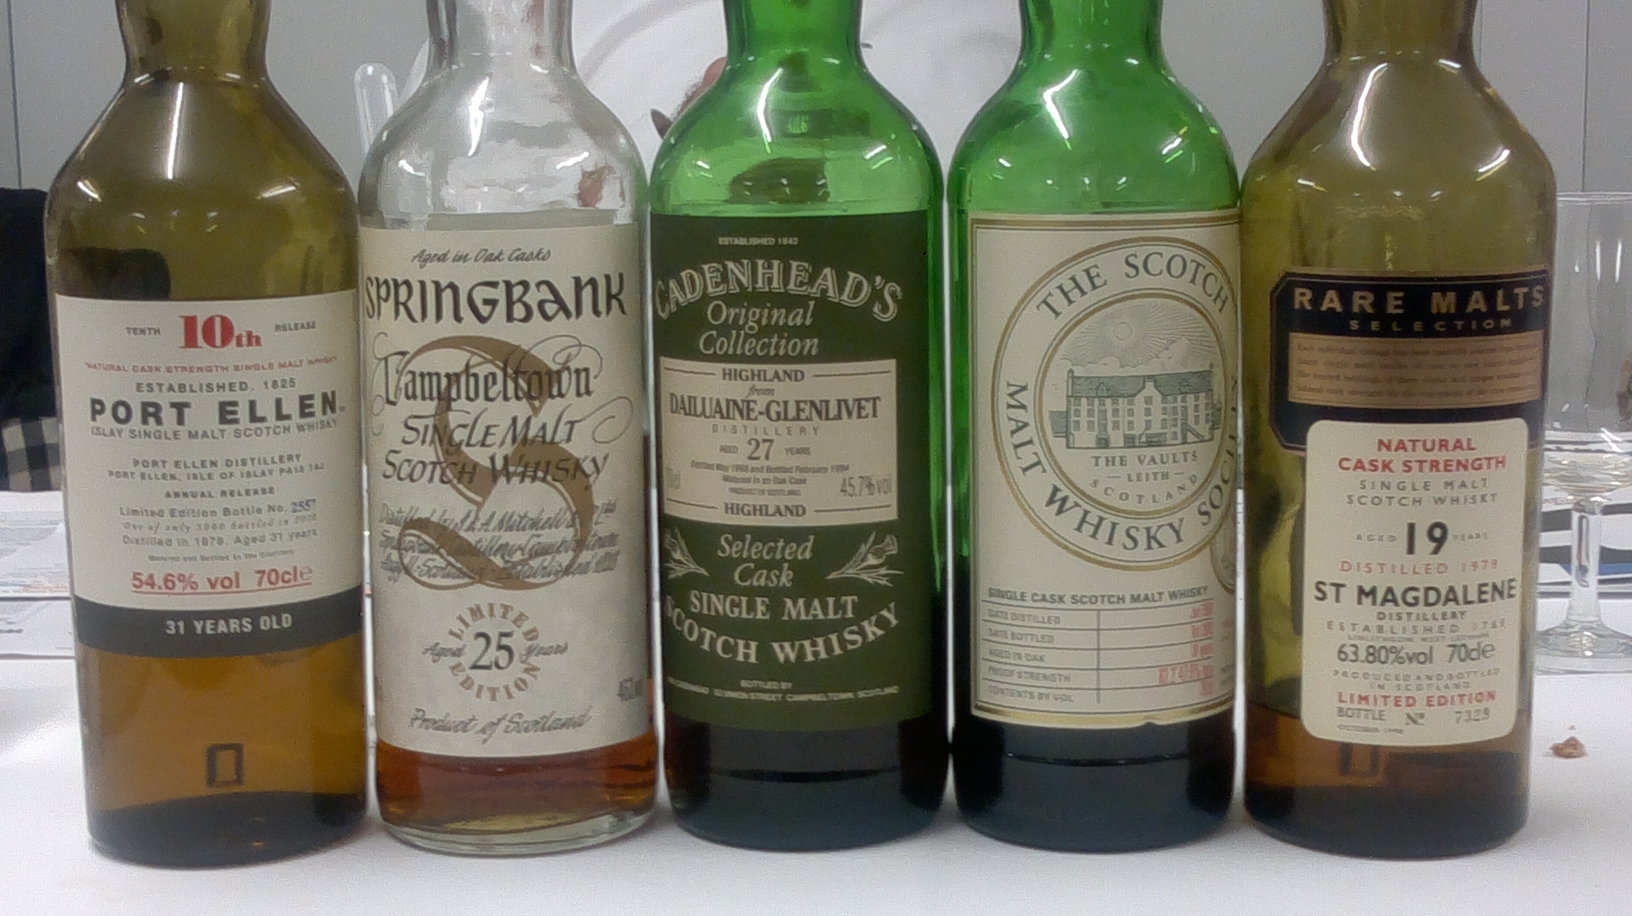 “Old & Rare” – Degustazione guidata di whisky rari ed esclusivi al MAX MUSEO DI Chiasso